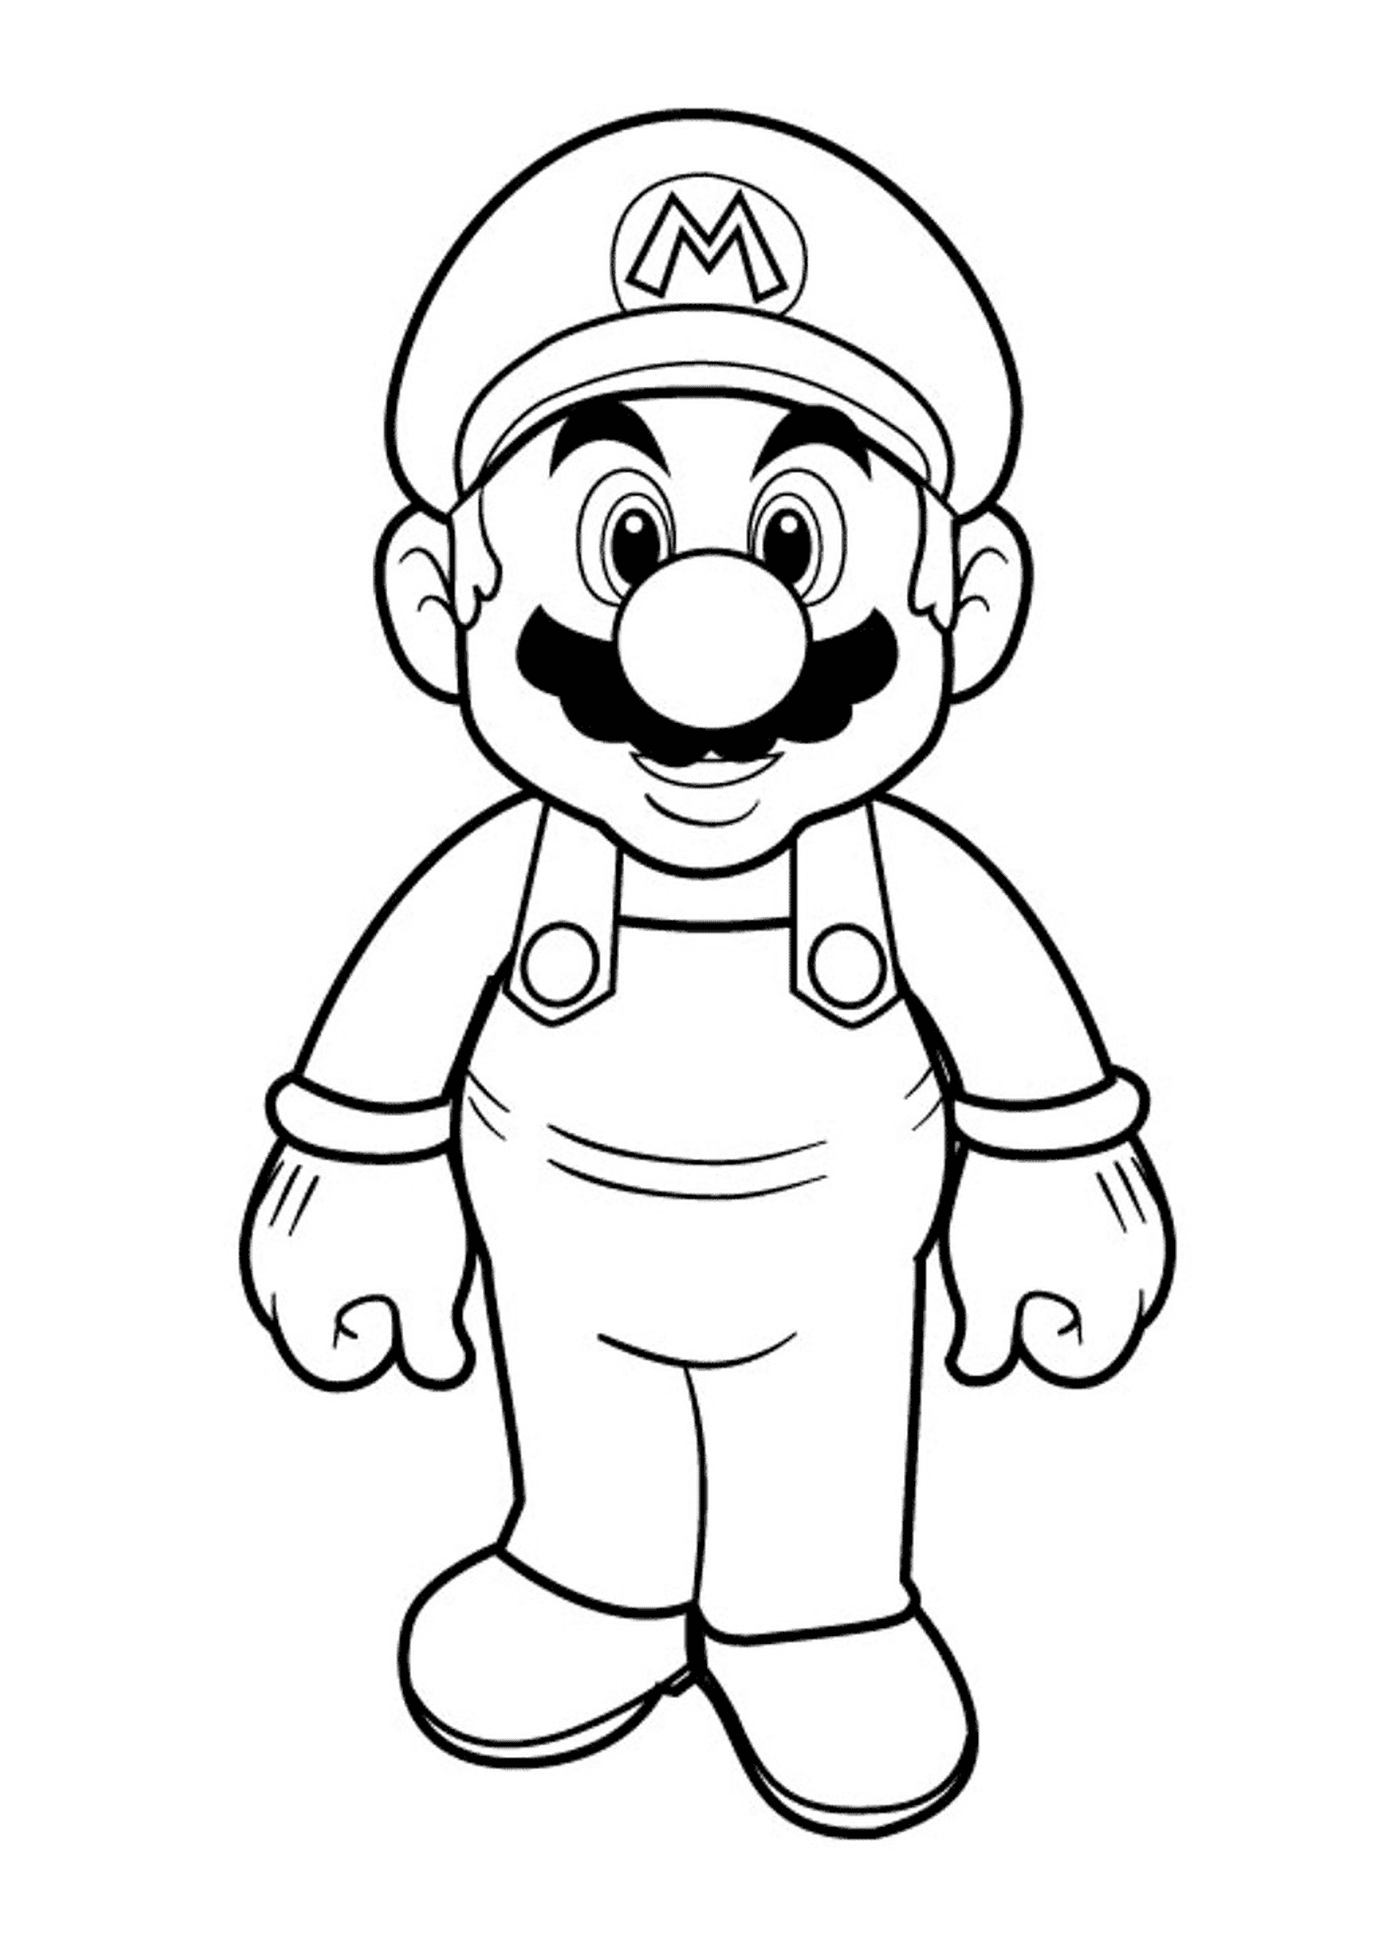  Super Mario Bros HD, a cartoon character 